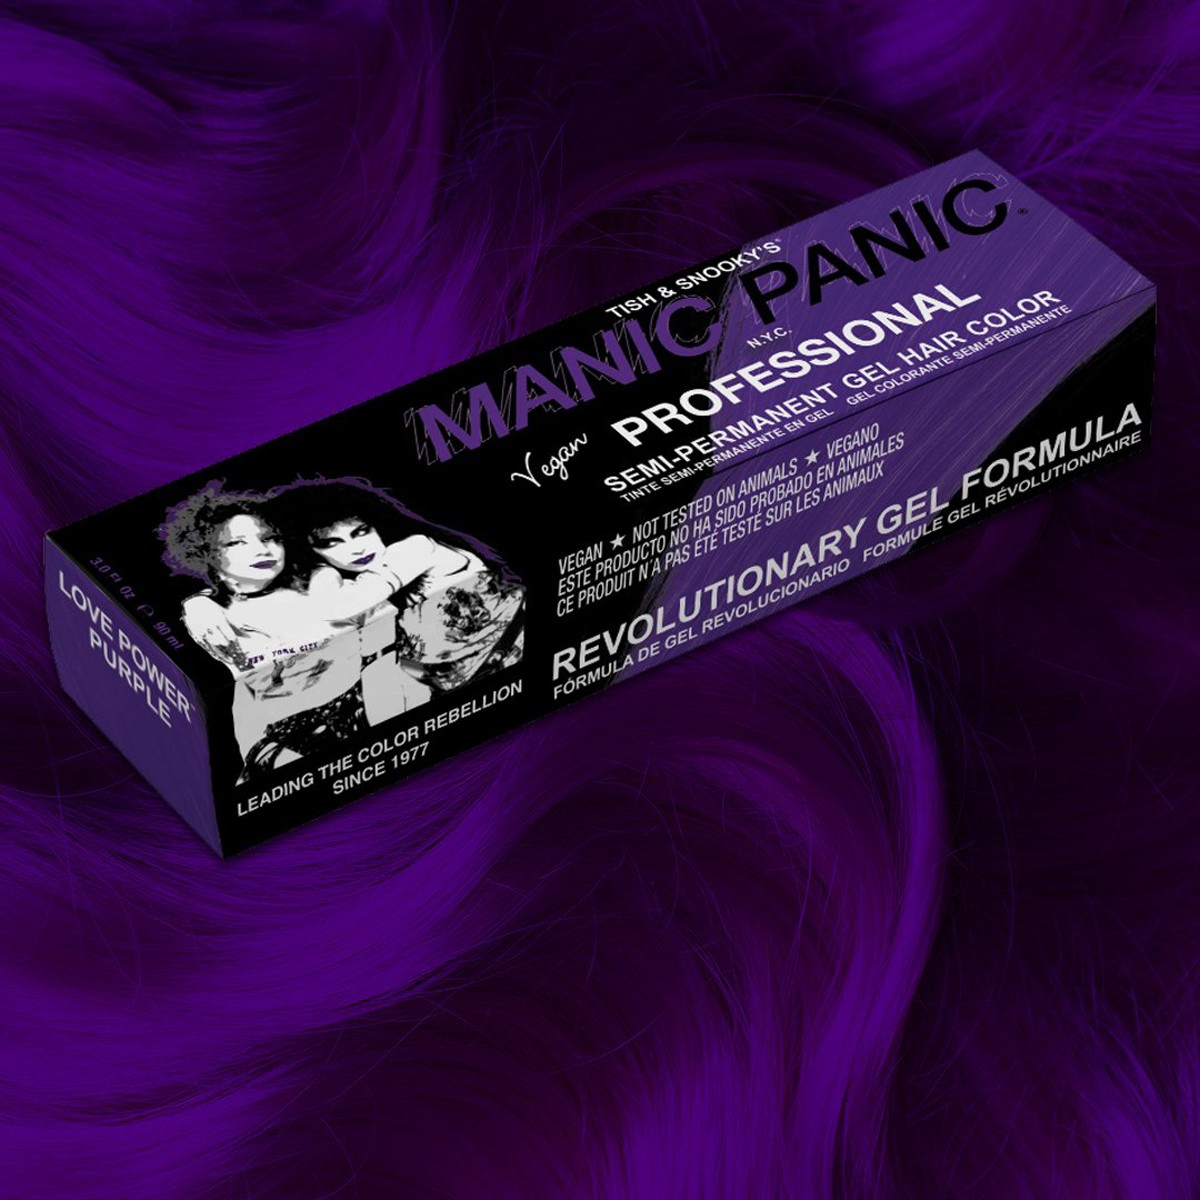 Manic Panic Profesyonel Love Power Purple Jel Saç Boyası J05